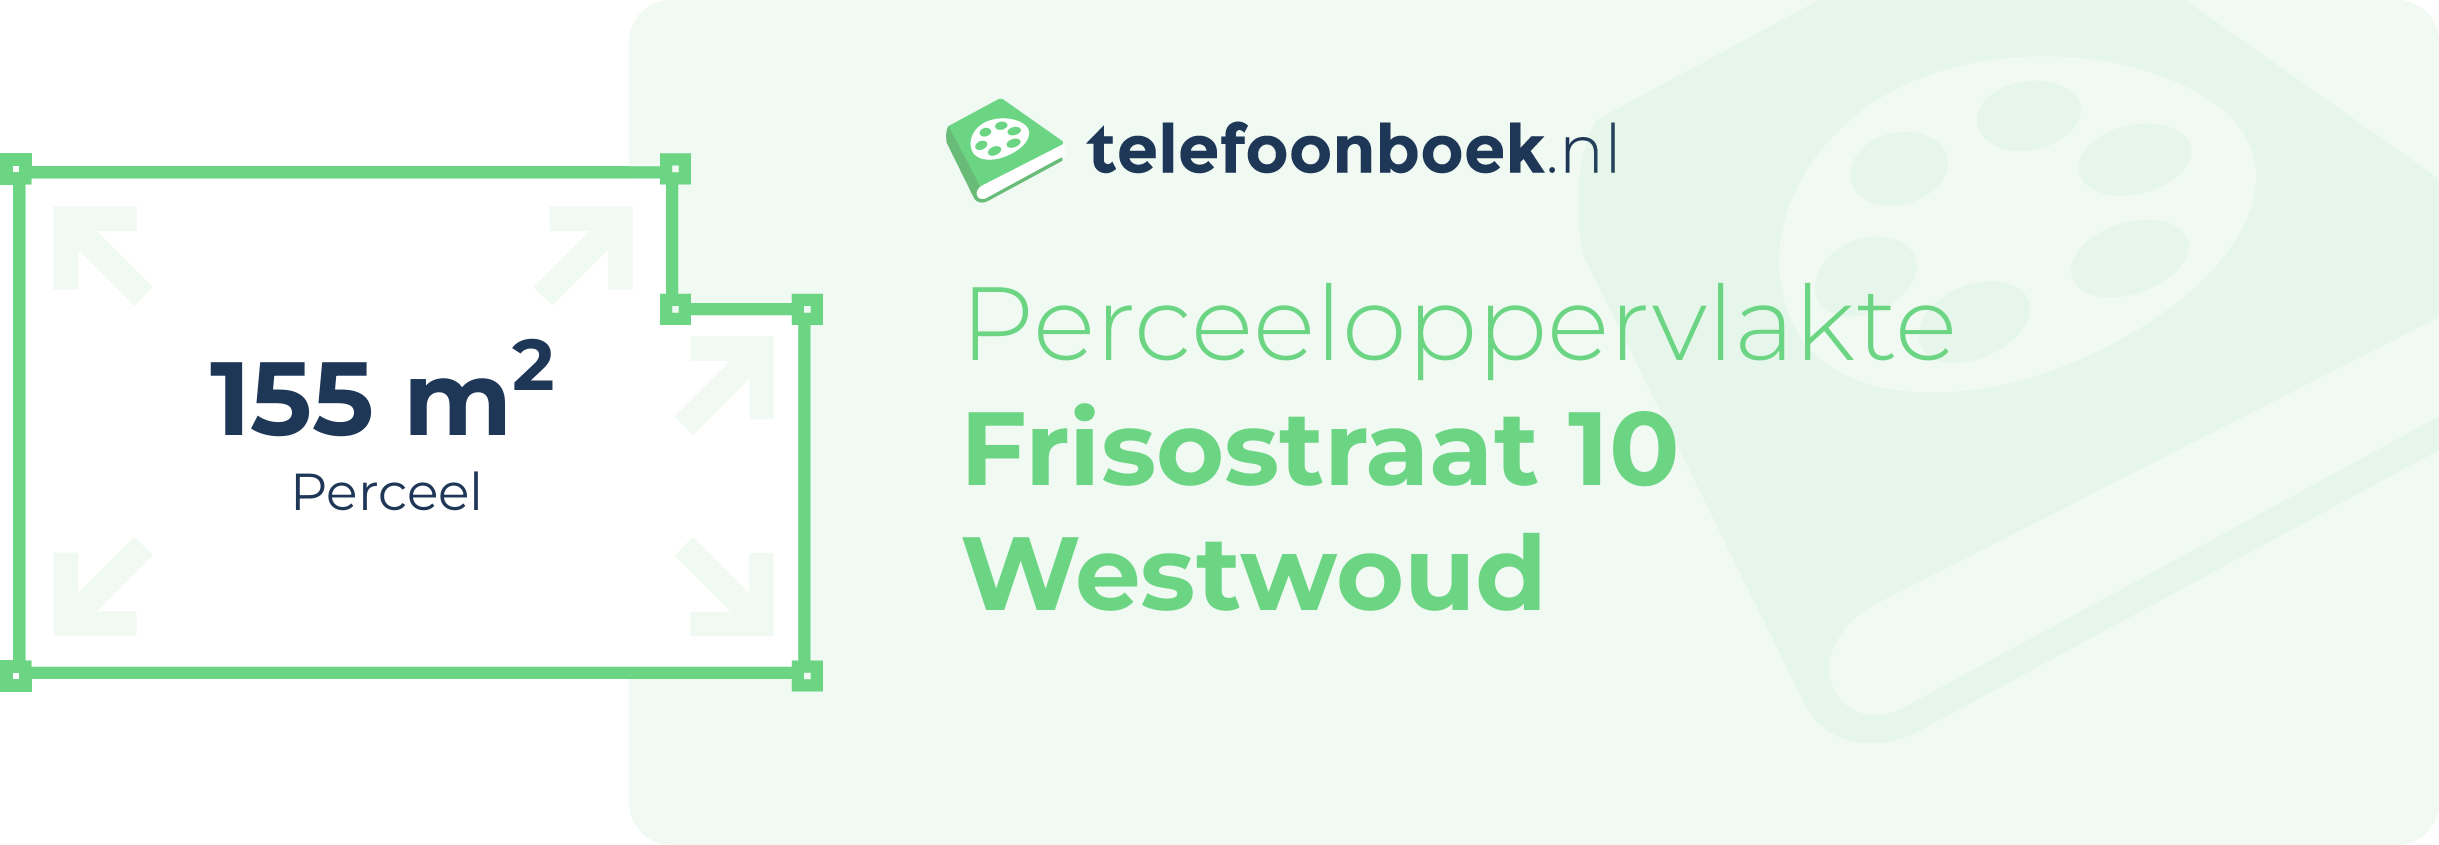 Perceeloppervlakte Frisostraat 10 Westwoud